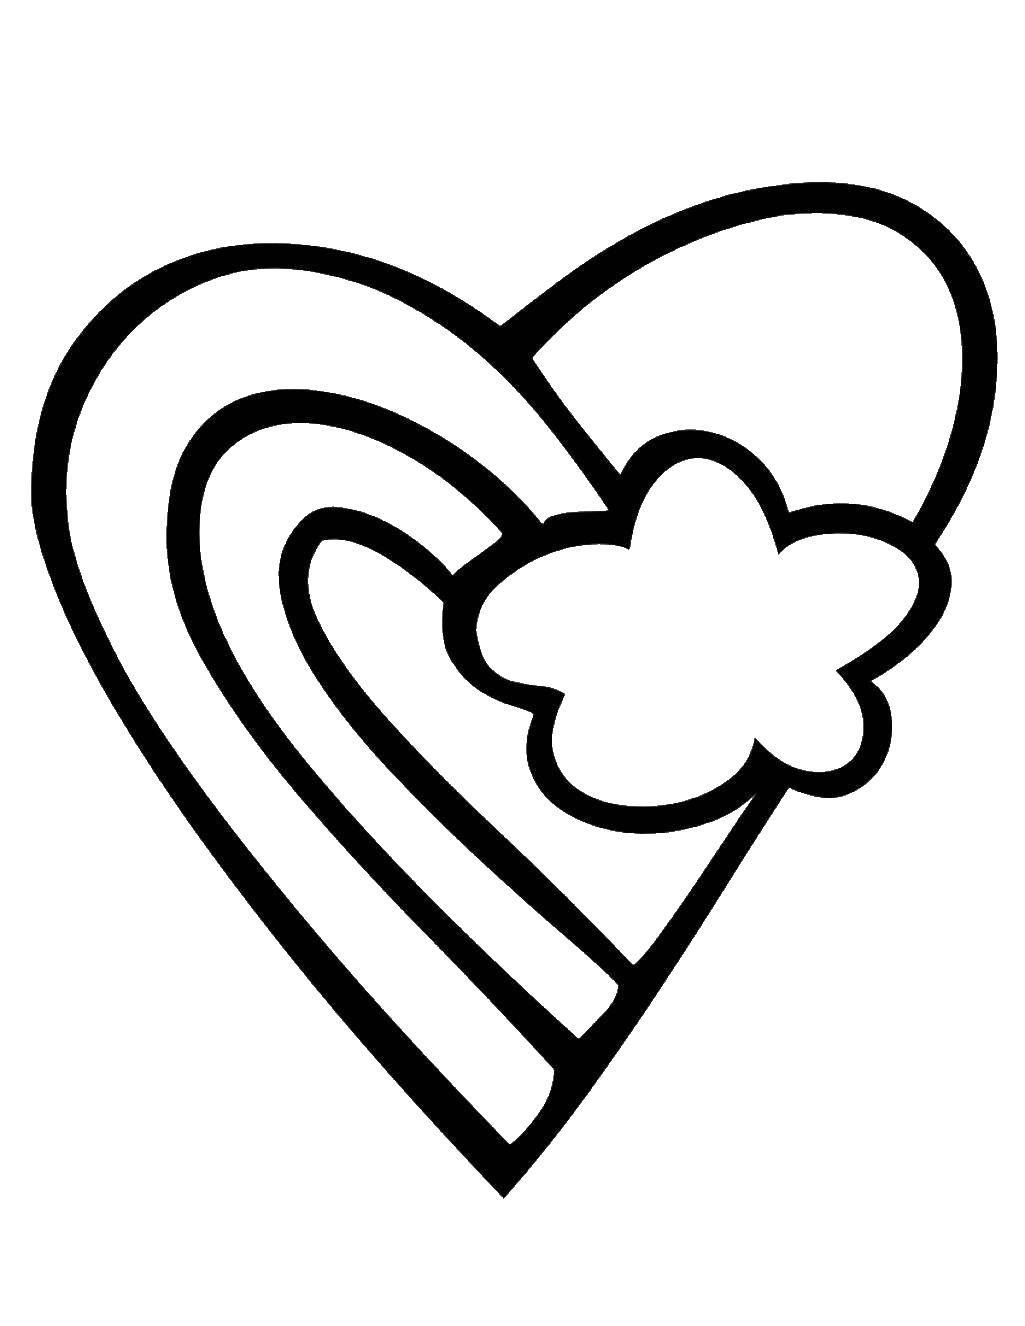 Раскраска Сердце для печати с замысловатыми узорами Изображения PNG | FindPng - Создатель PNG